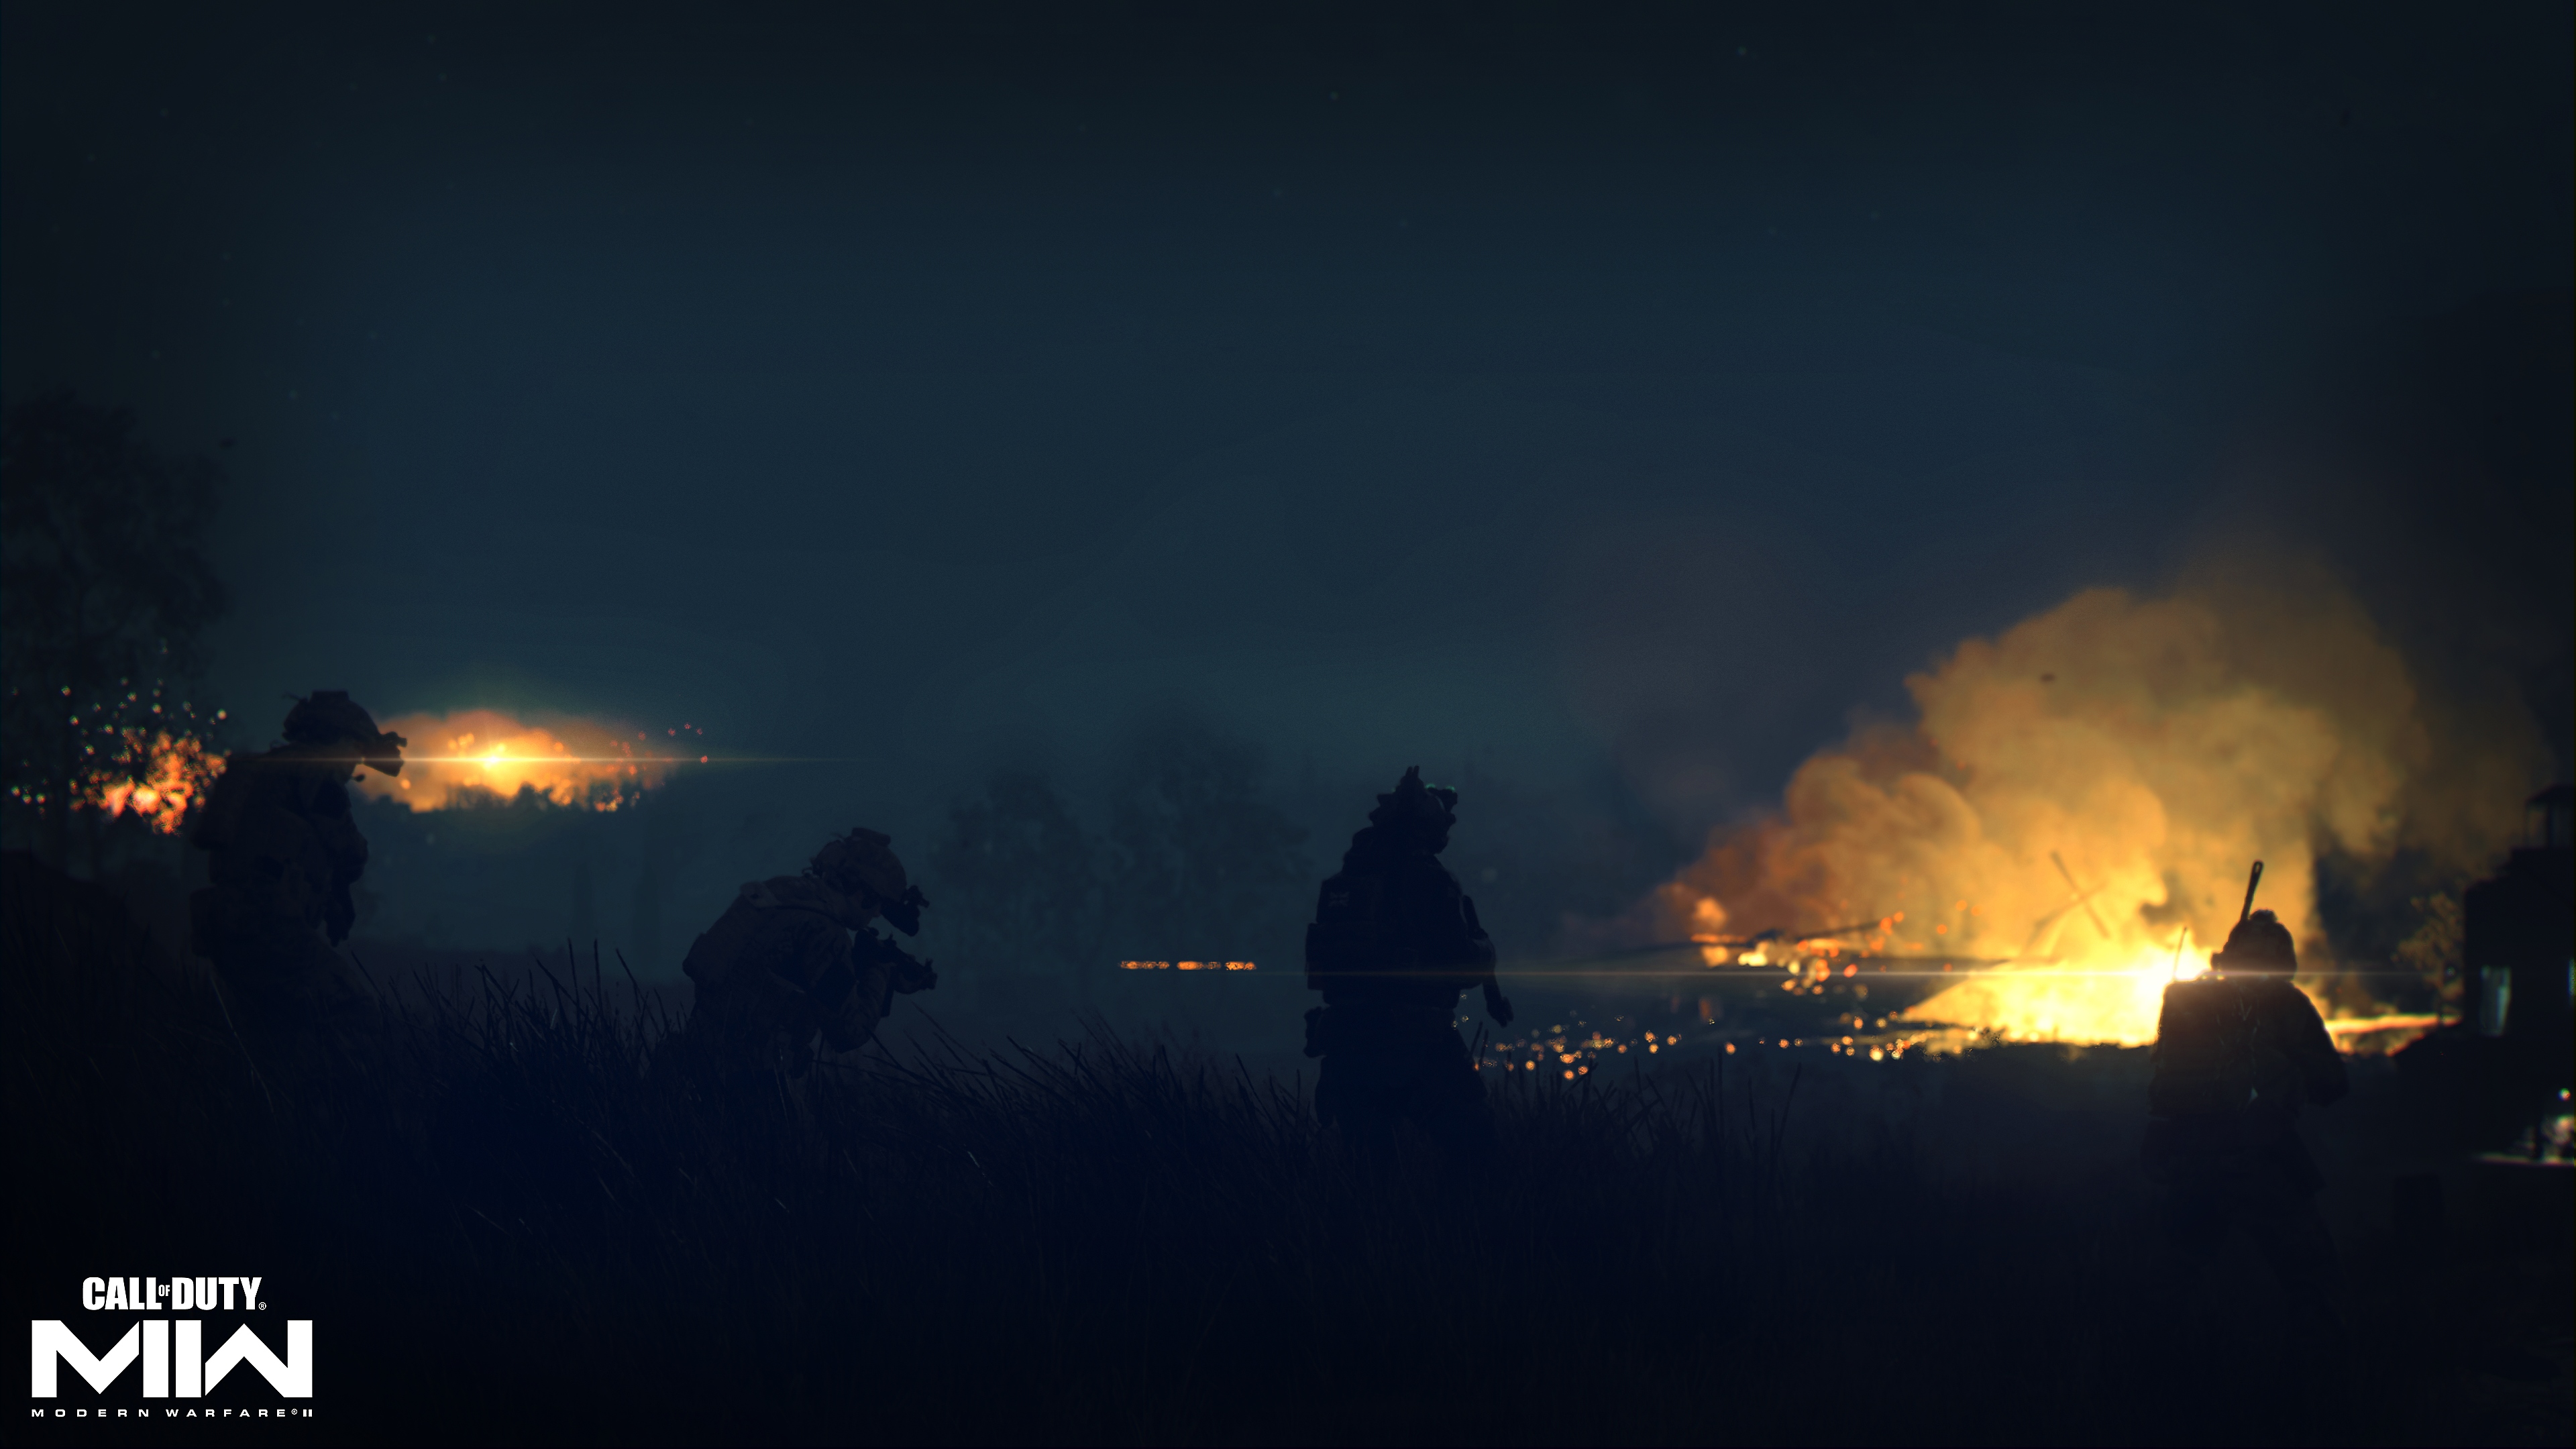 Call of Duty: Modern Warfare 2 2022 captura de pantalla que muestra un incendio a lo lejos de un paisaje oscuro